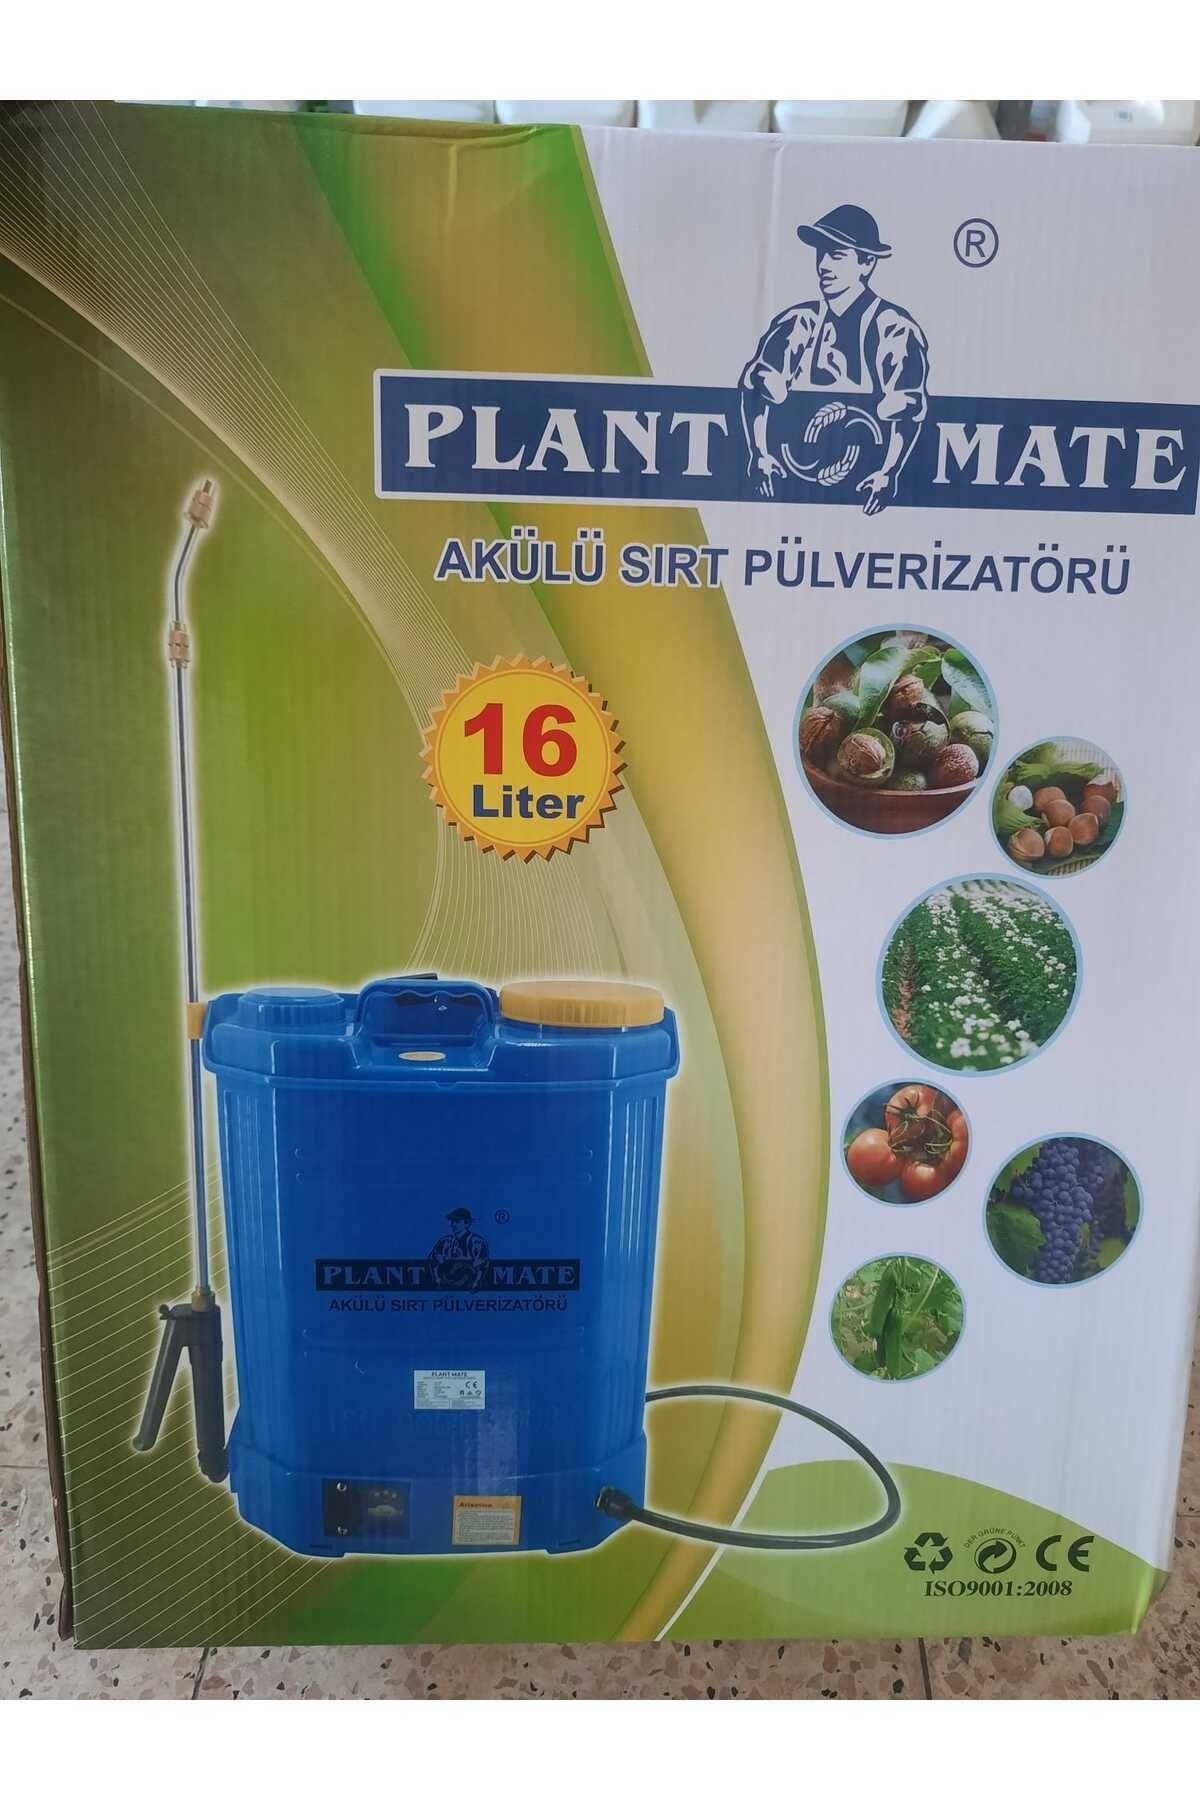 Planet Plant Mate 16 Lt Akülü Şarzlı Ilaç Pompası Makinası